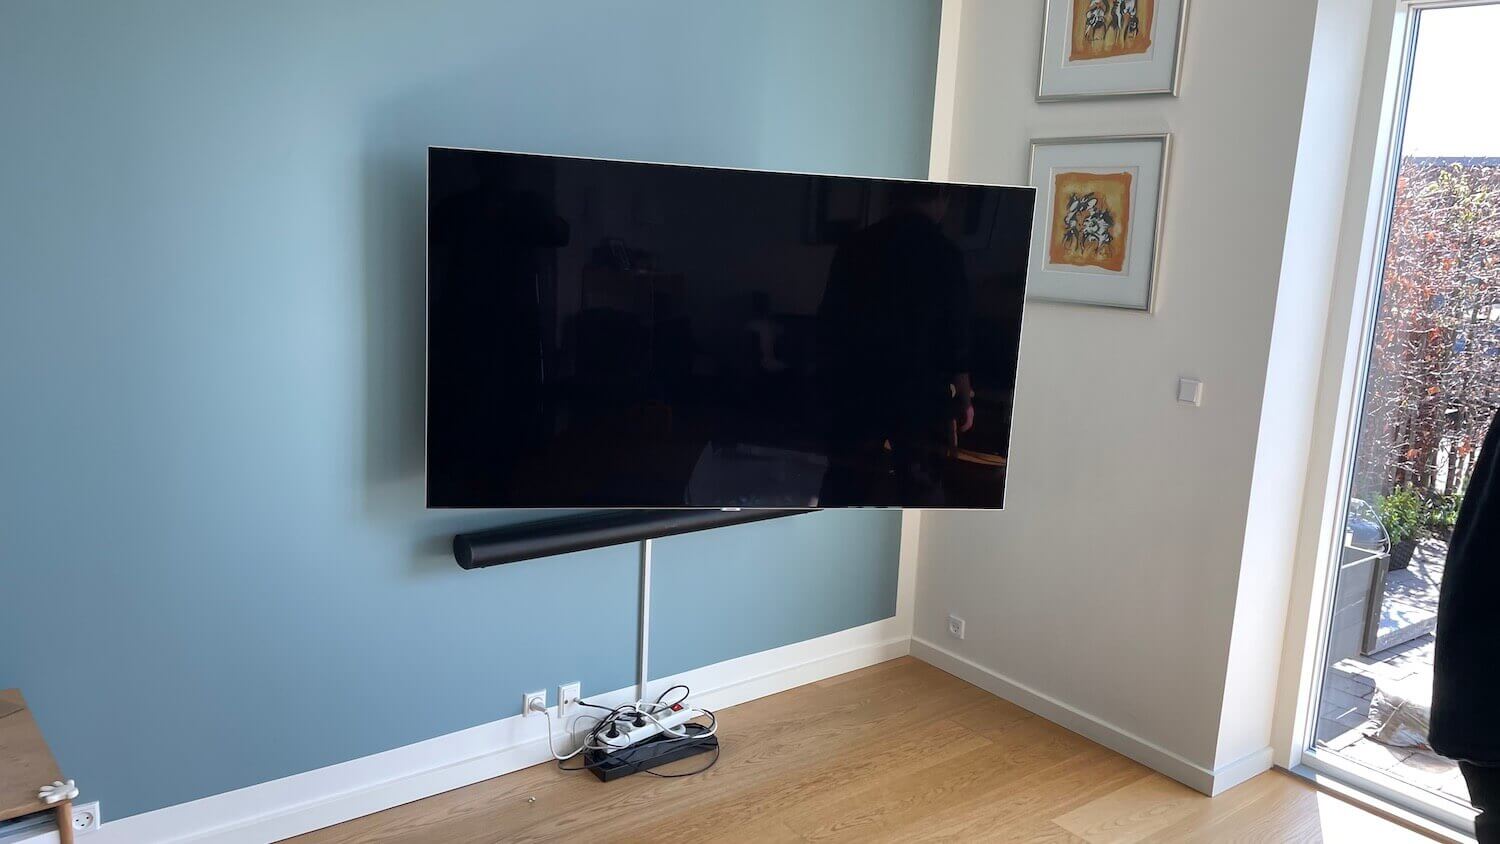 Installation af Sonos soundbar, kabelbakke og Samsung TV på vægbeslag med drejefunktion